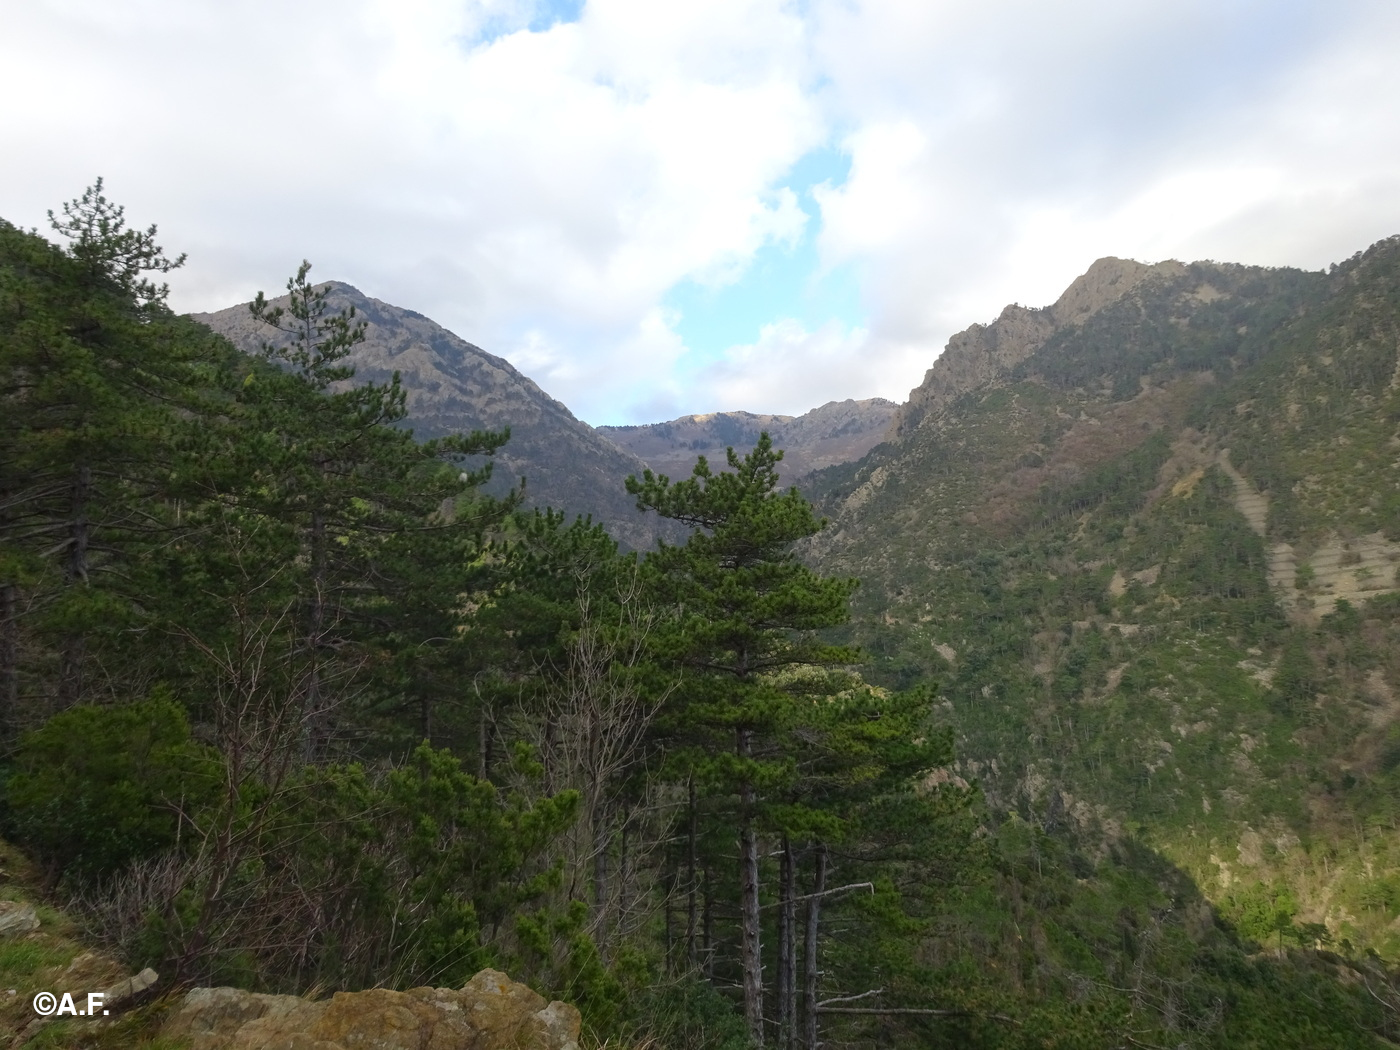 L’imbocco del vallone del Rio di Lerca, con il Monte Rama a sinistra e la Rocca Turchina a destra